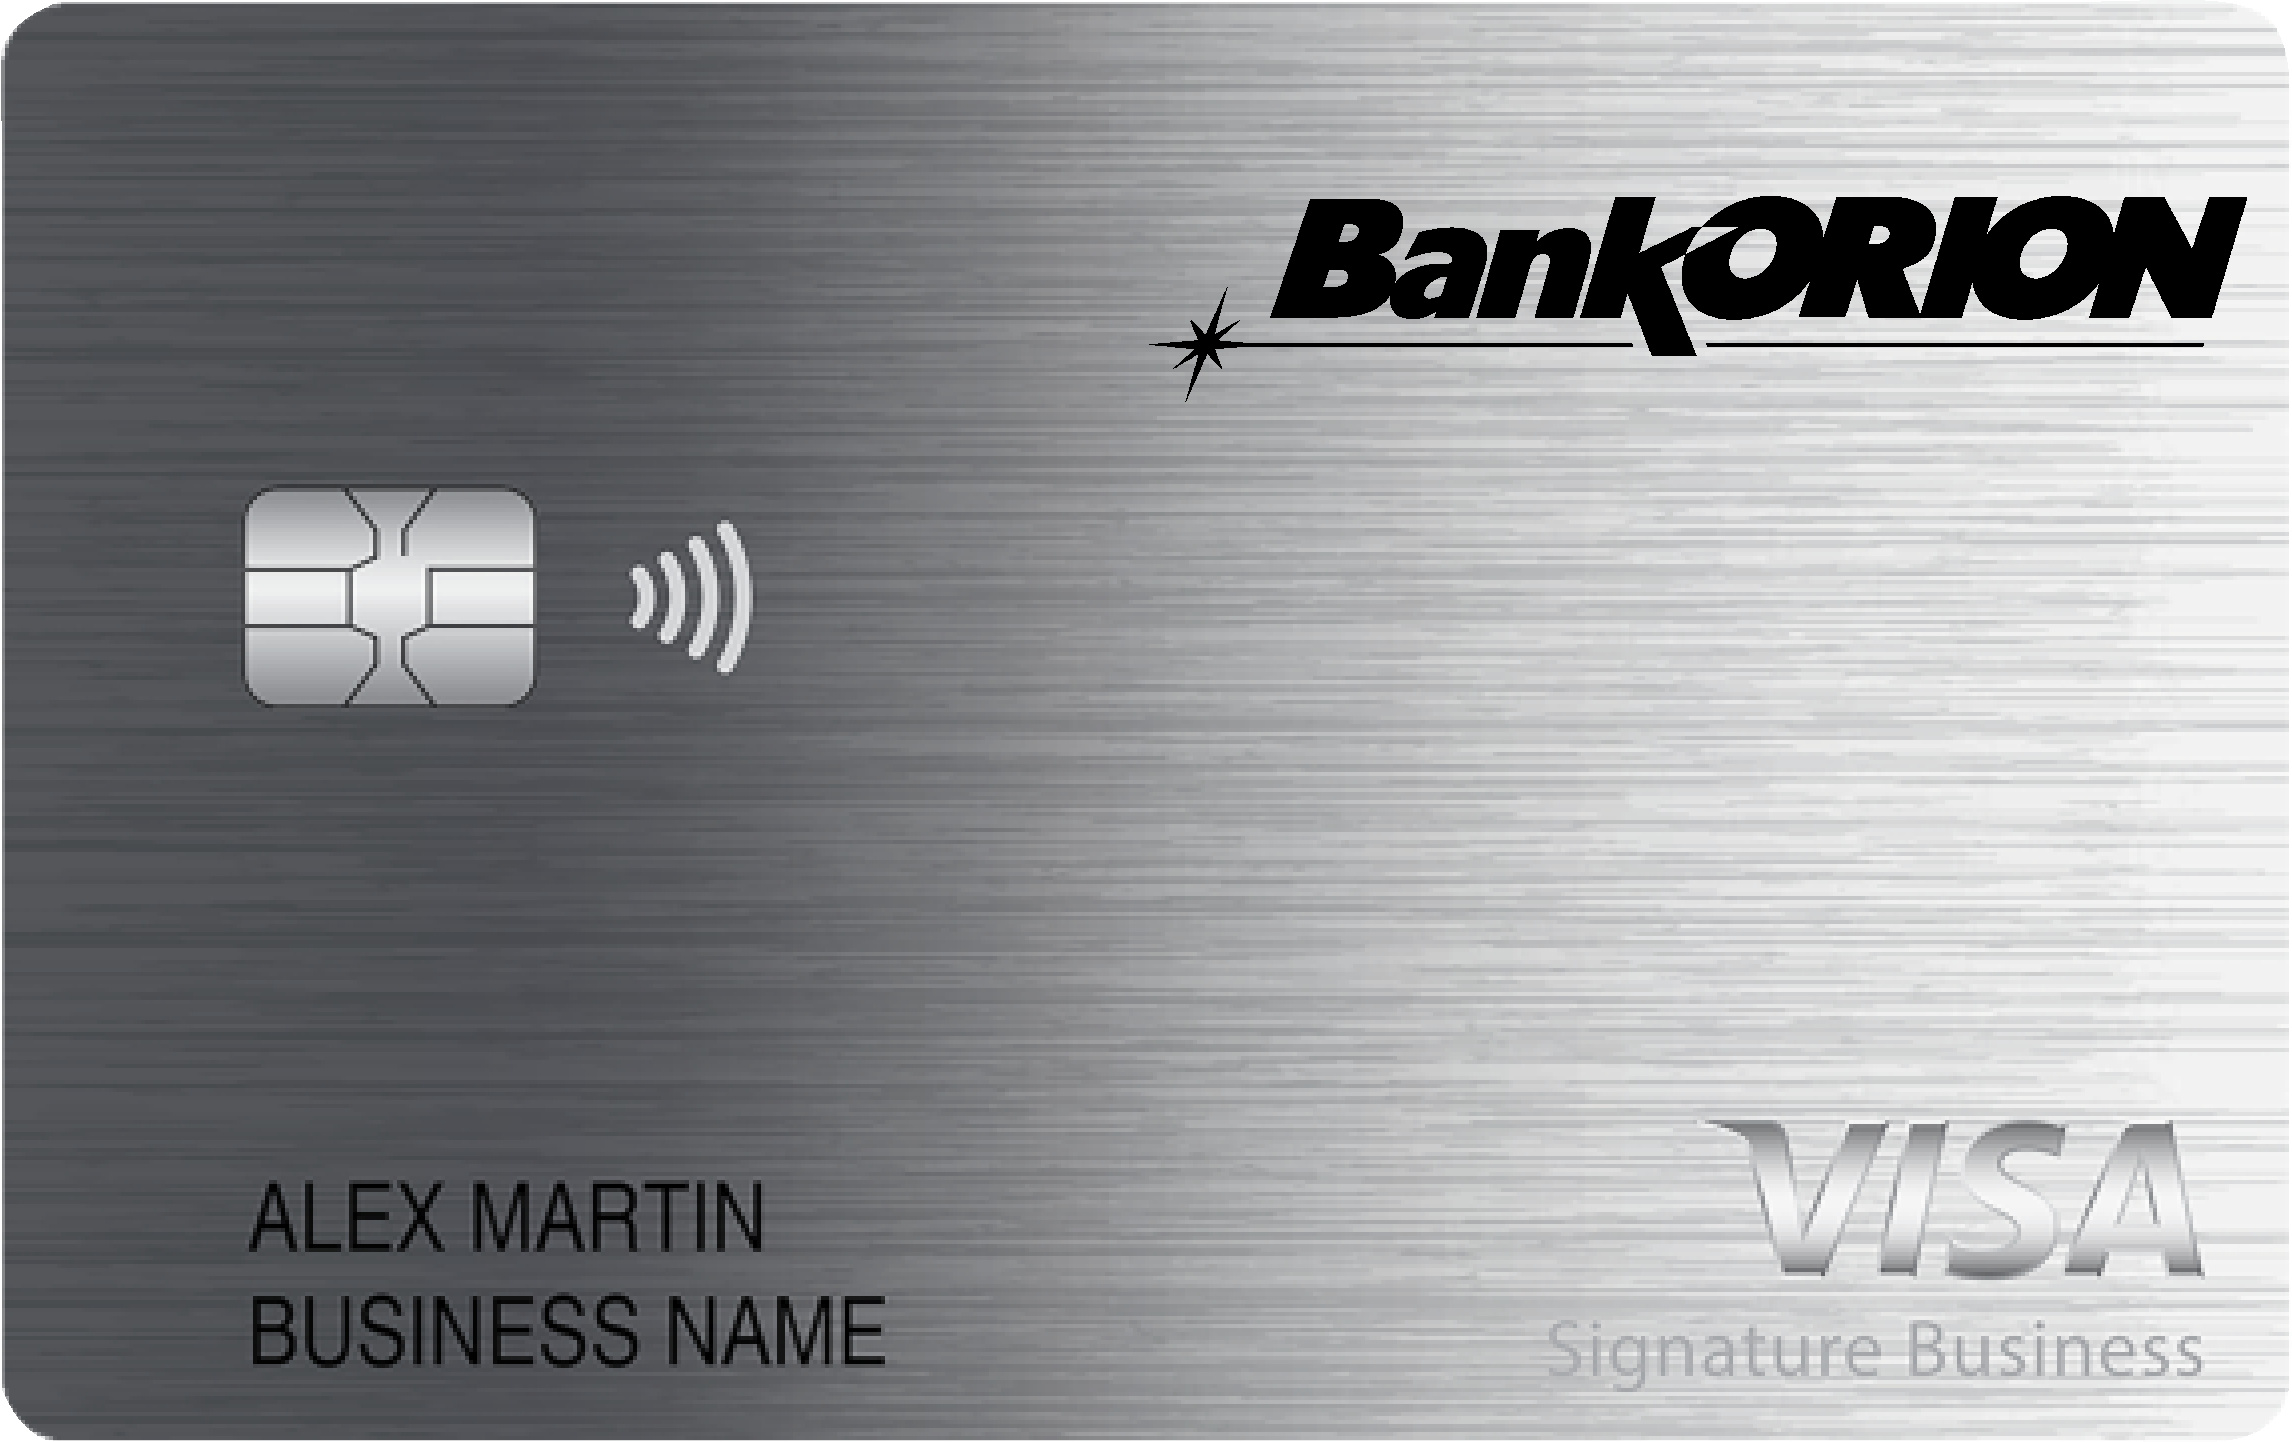 BankORION Smart Business Rewards Card